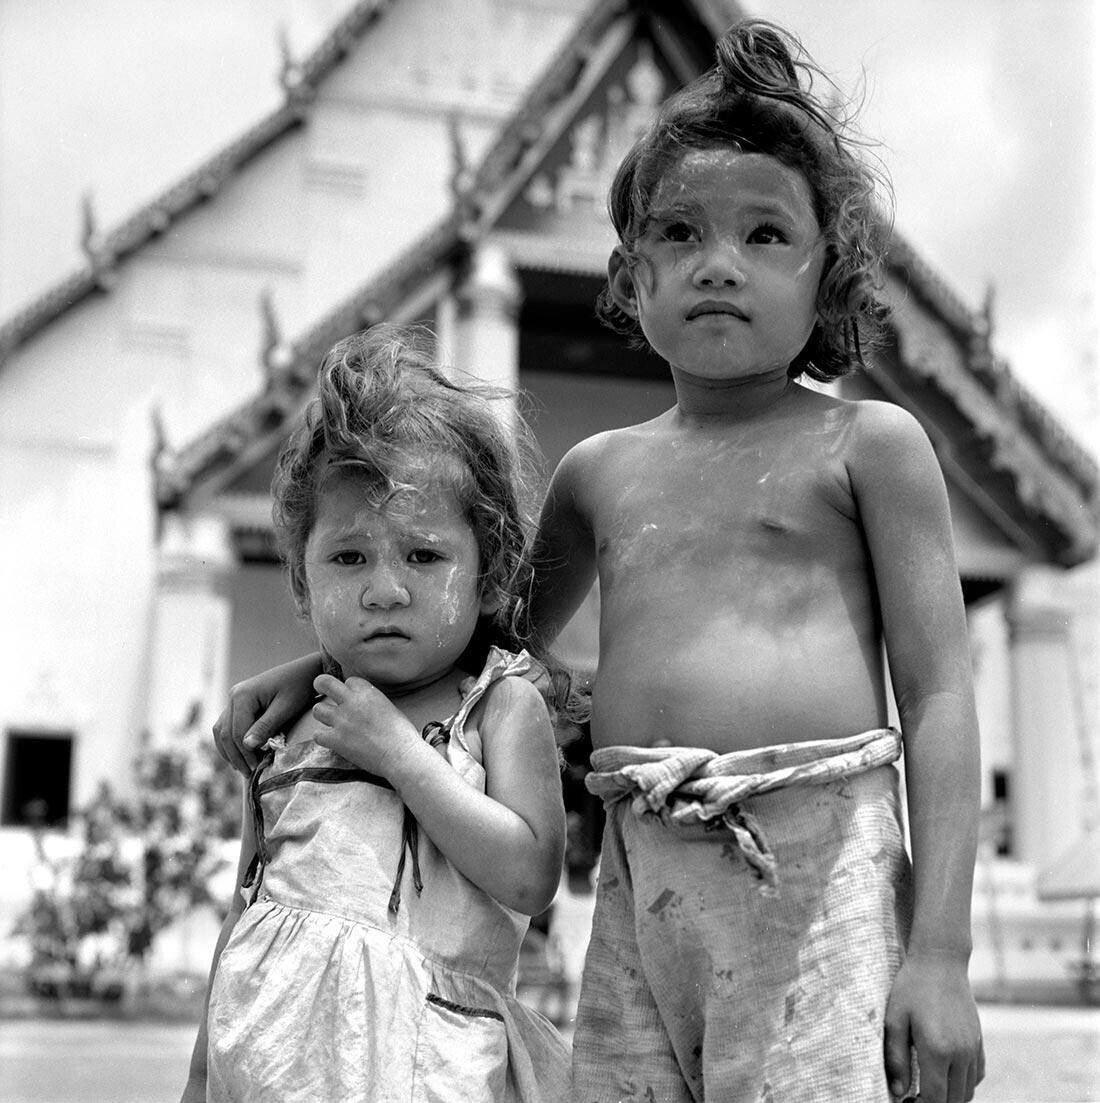 5 июня 1959 год, Таиланд. Фотограф Вивиан Майер